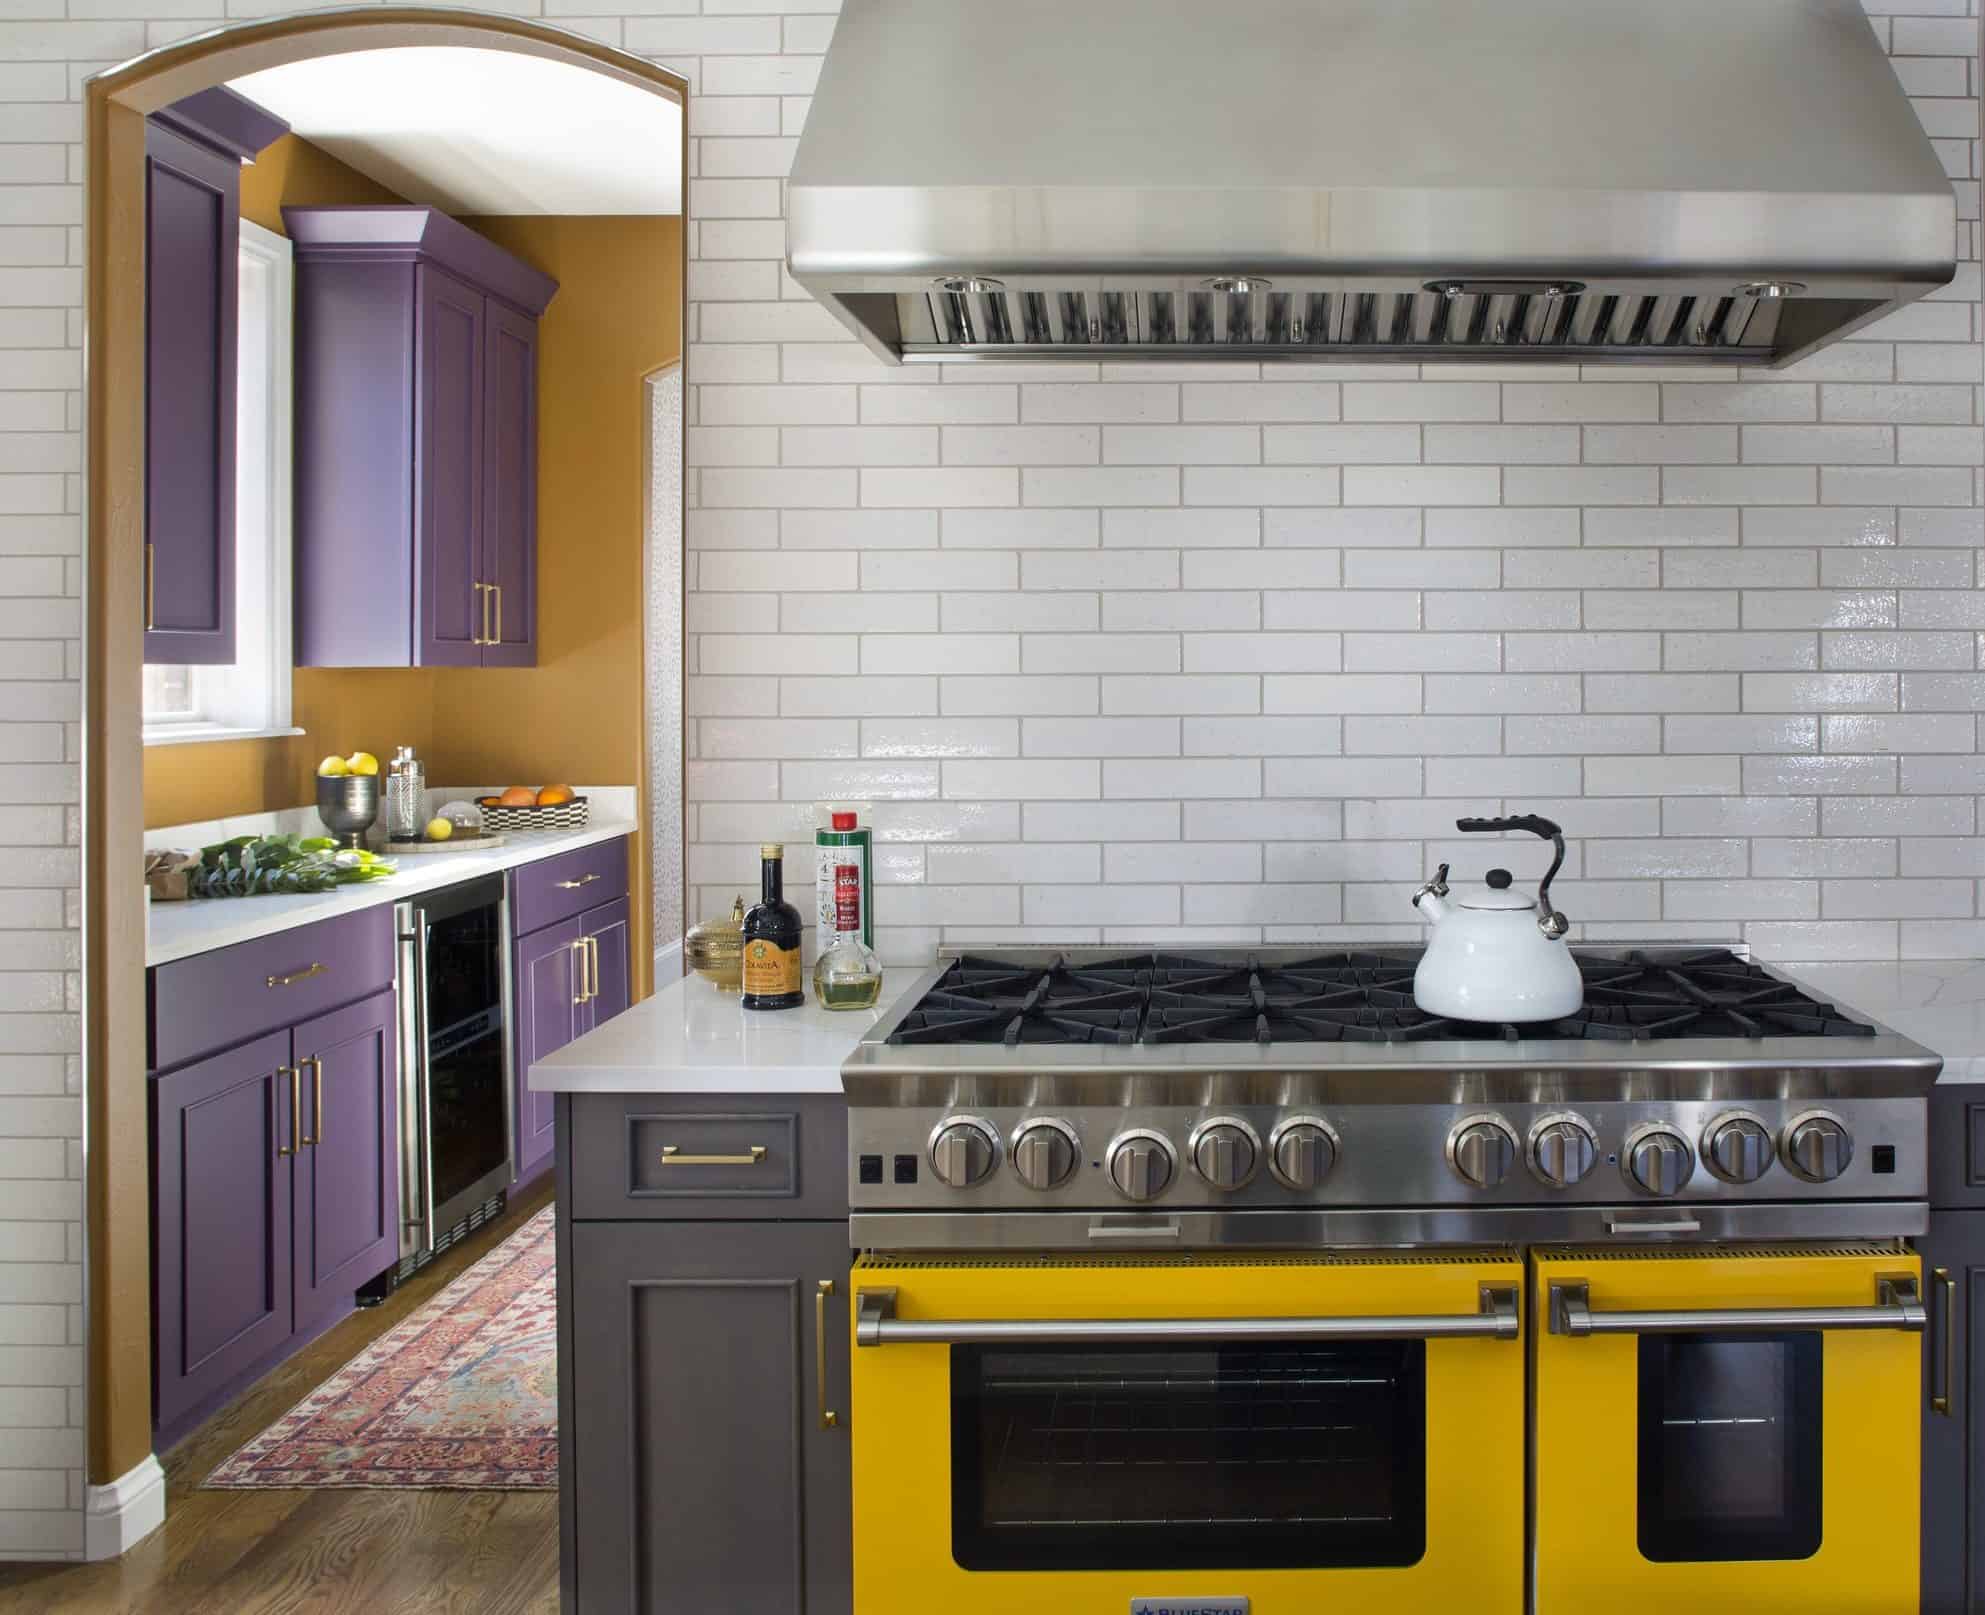 Custom kitchen design by best interior designer